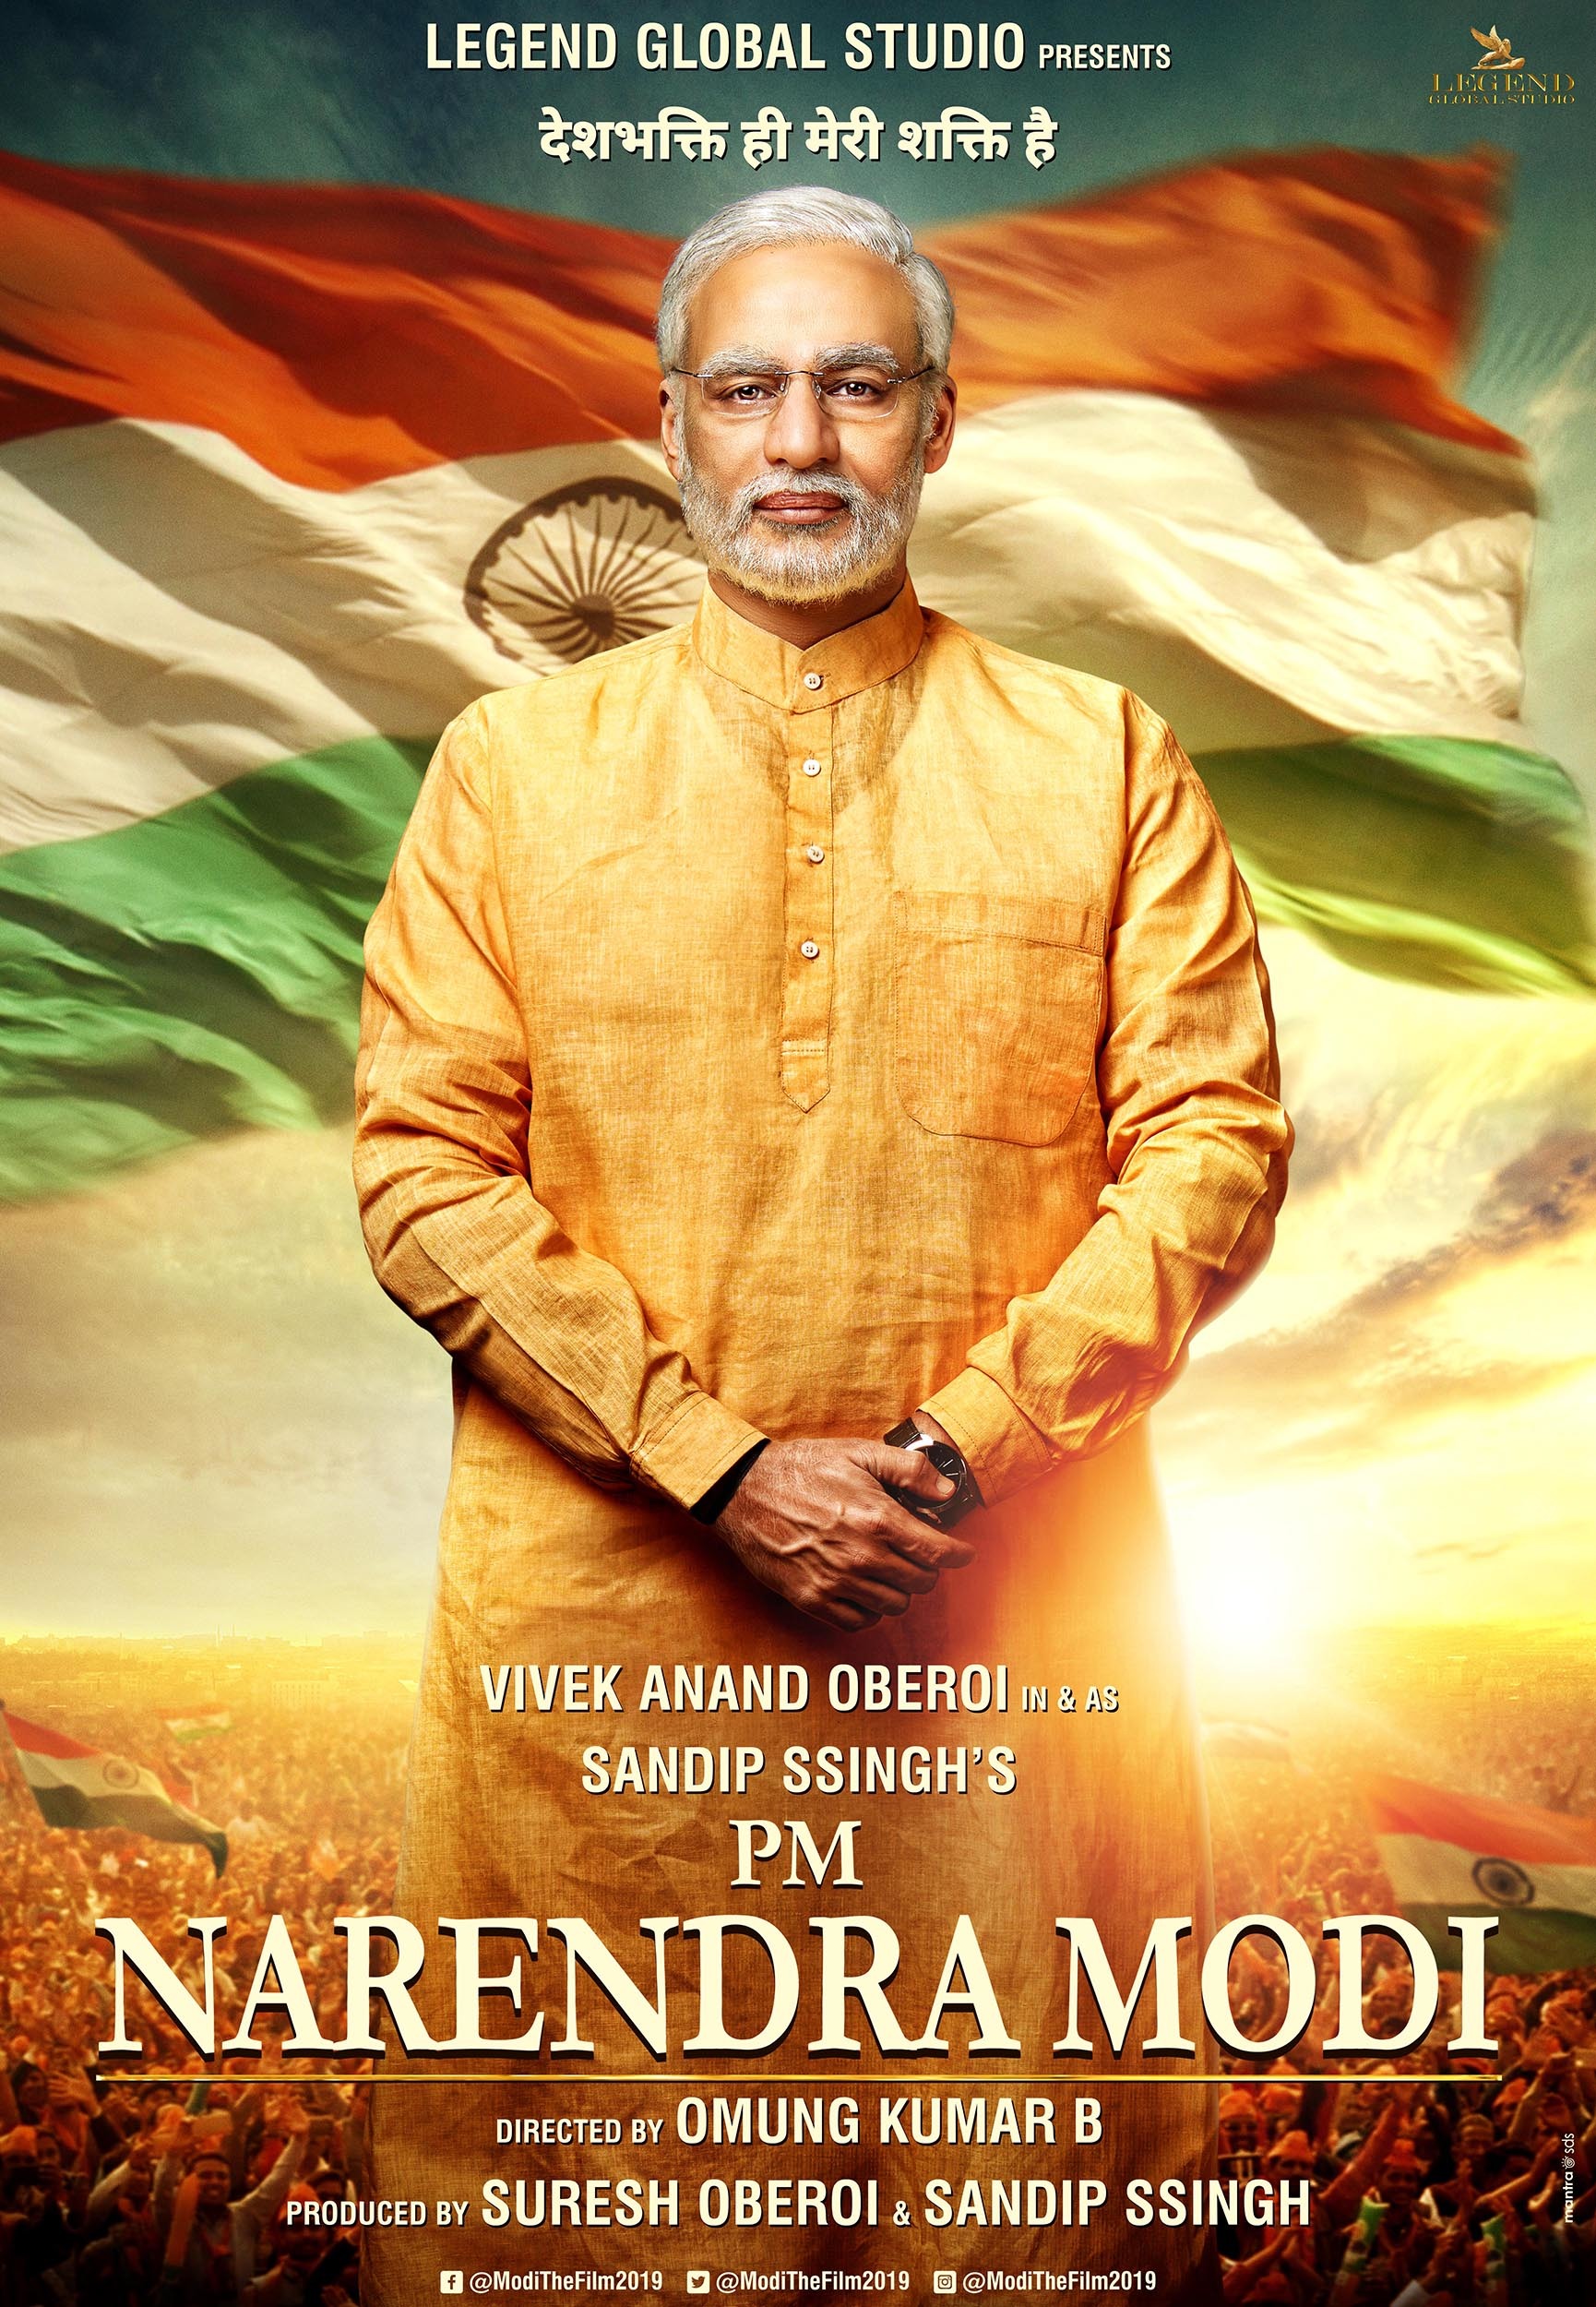 Mega Sized Movie Poster Image for PM Narendra Modi 